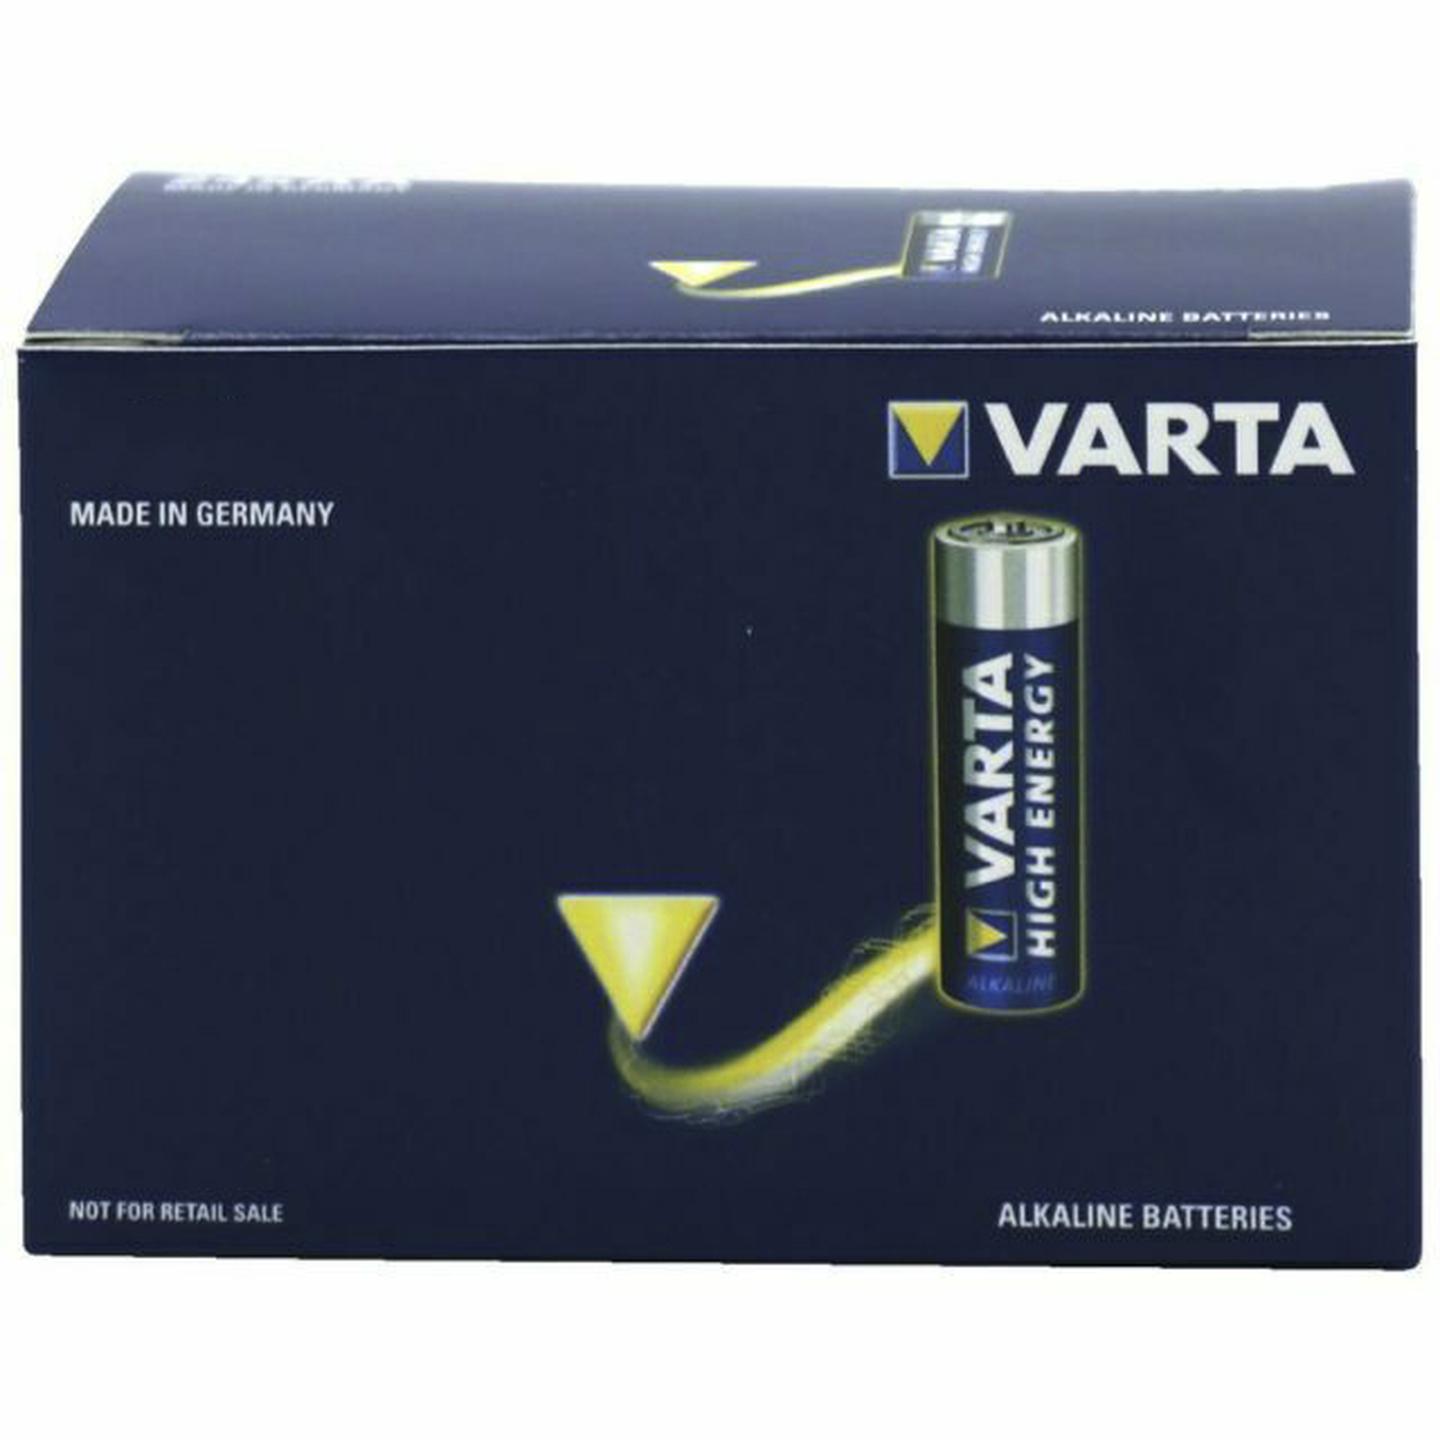 VARTA High Energy AA Alkaline Batteries 24 Pack